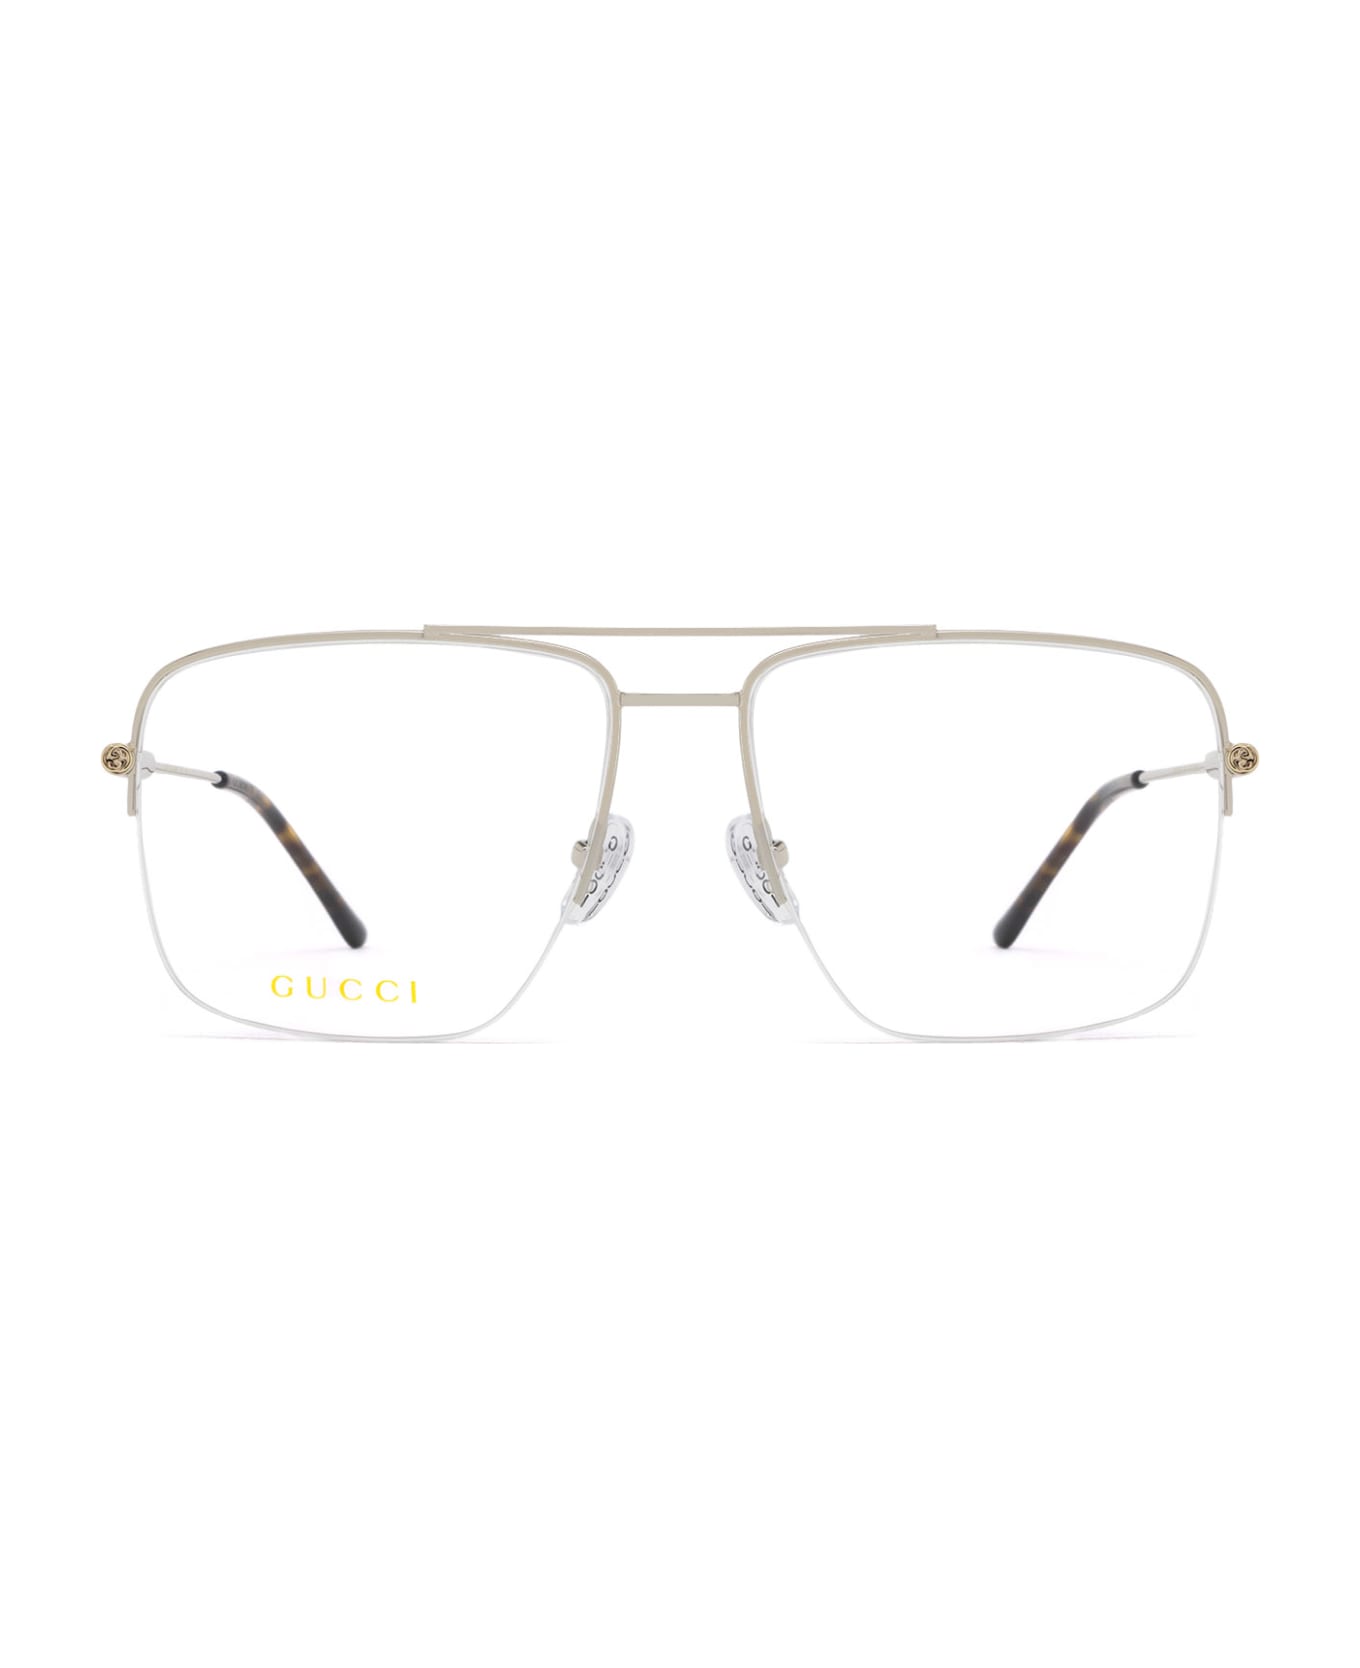 Gucci Eyewear Gg1415o Silver Glasses - Silver